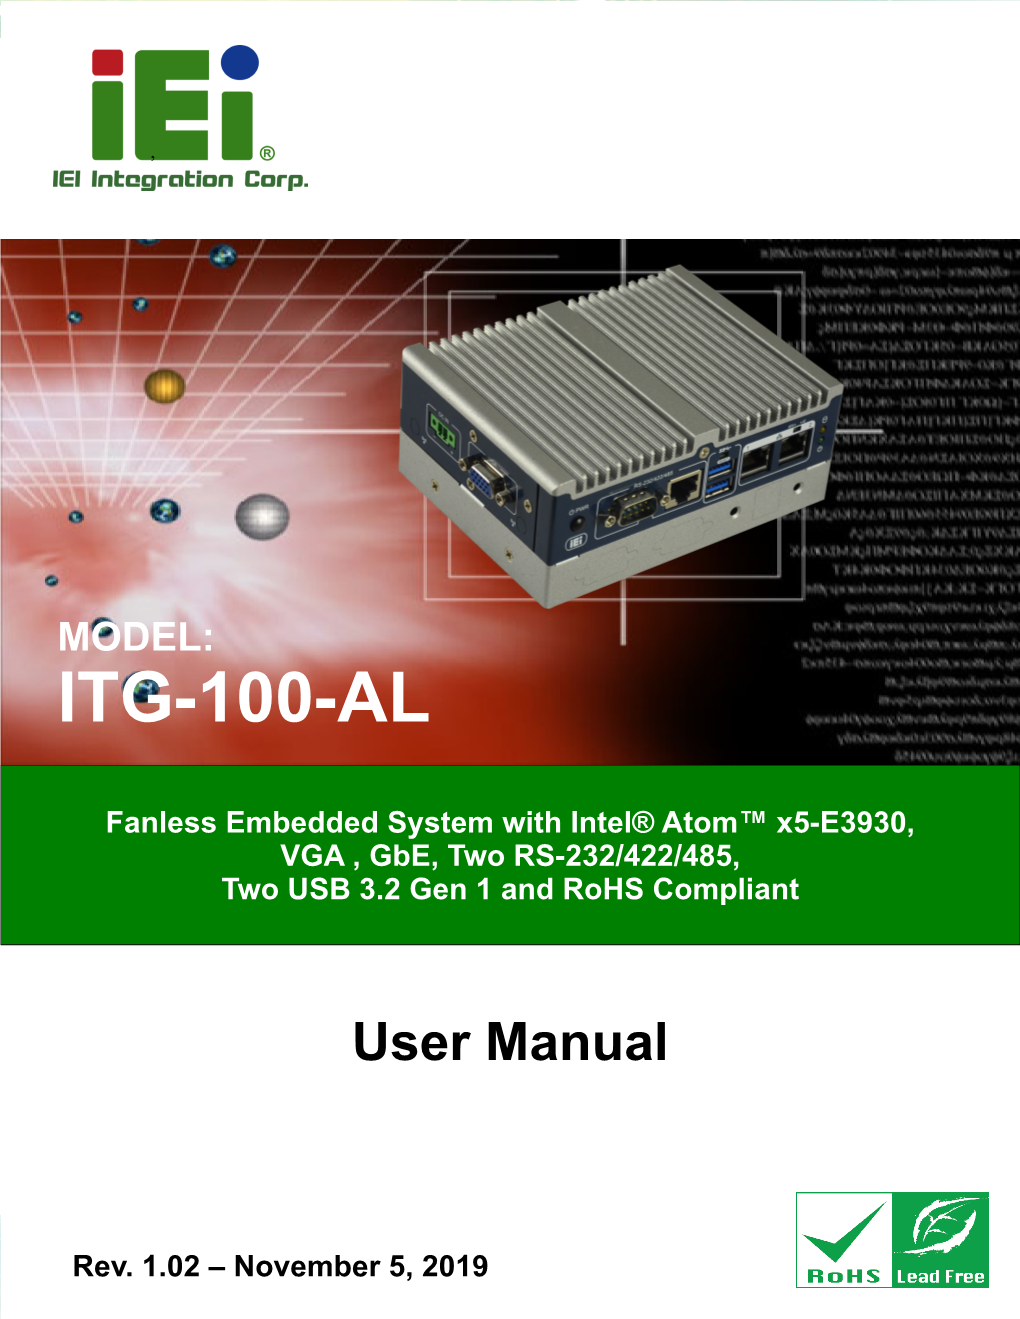 ITG-100-AL Embedded System